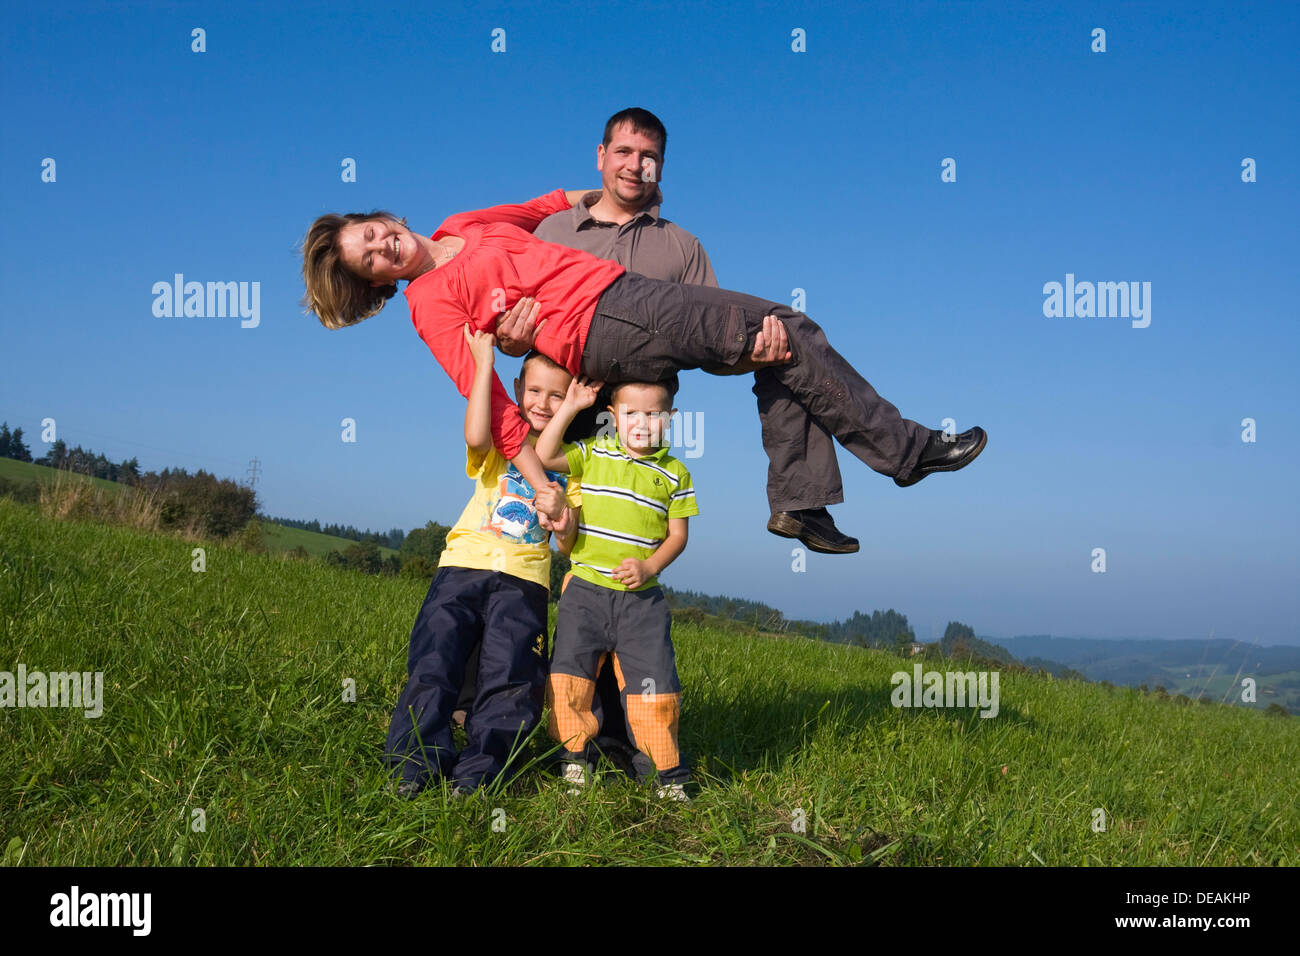 Famiglia, padre, 36 anni, madre, 30 anni, i bambini di 6 e 4 anni, giocando in un prato Foto Stock